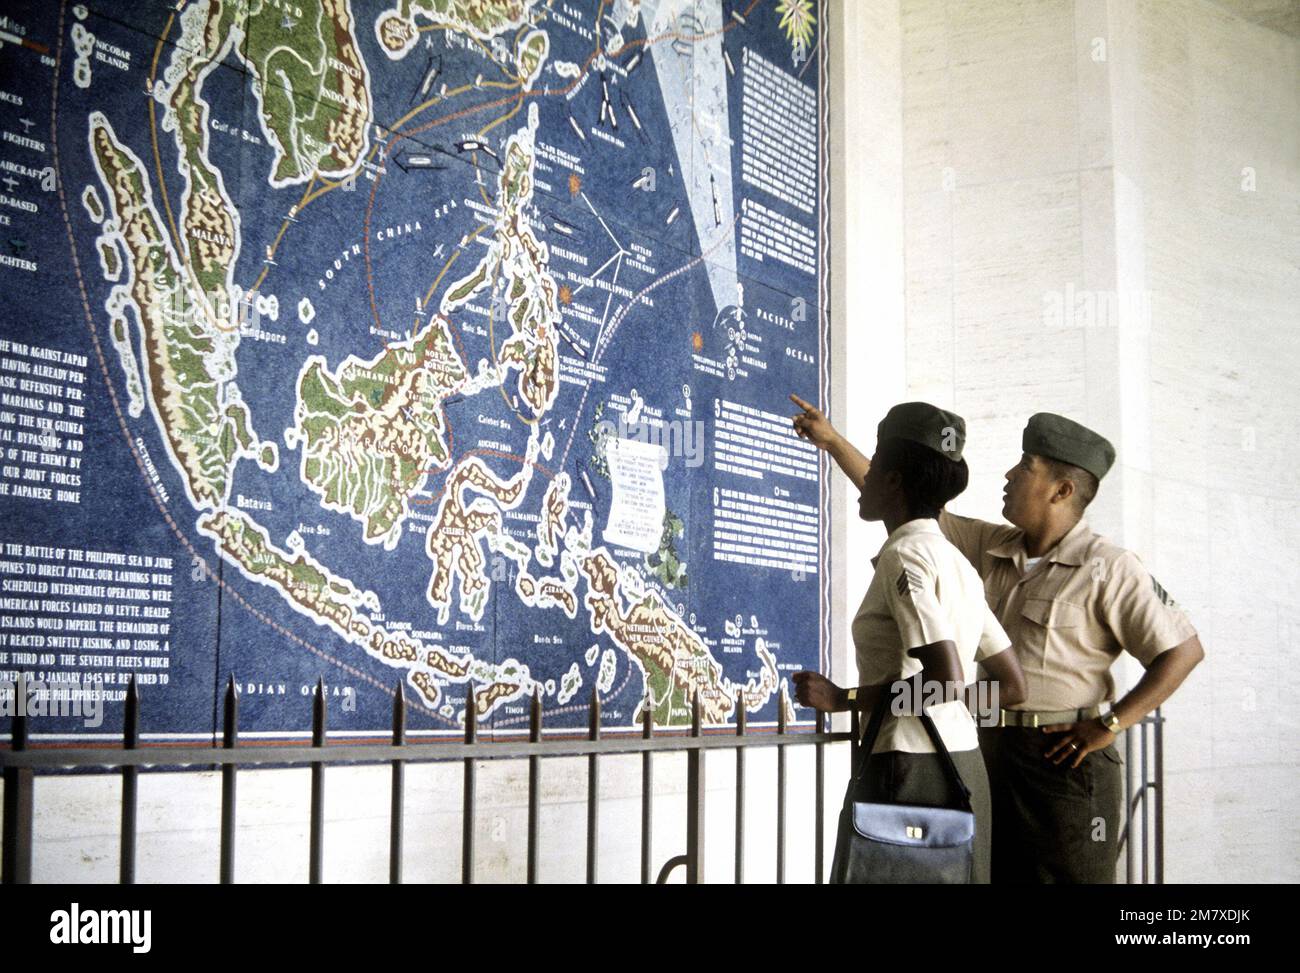 LE SGT Everett et SGT Sanchez regardent une carte montrant les lieux des campagnes de bataille du Pacifique de la Seconde Guerre mondiale lors de leur visite au musée du cimetière commémoratif national du Pacifique. Base: Honolulu État: Hawaï (HI) pays: Etats-Unis d'Amérique (USA) Banque D'Images